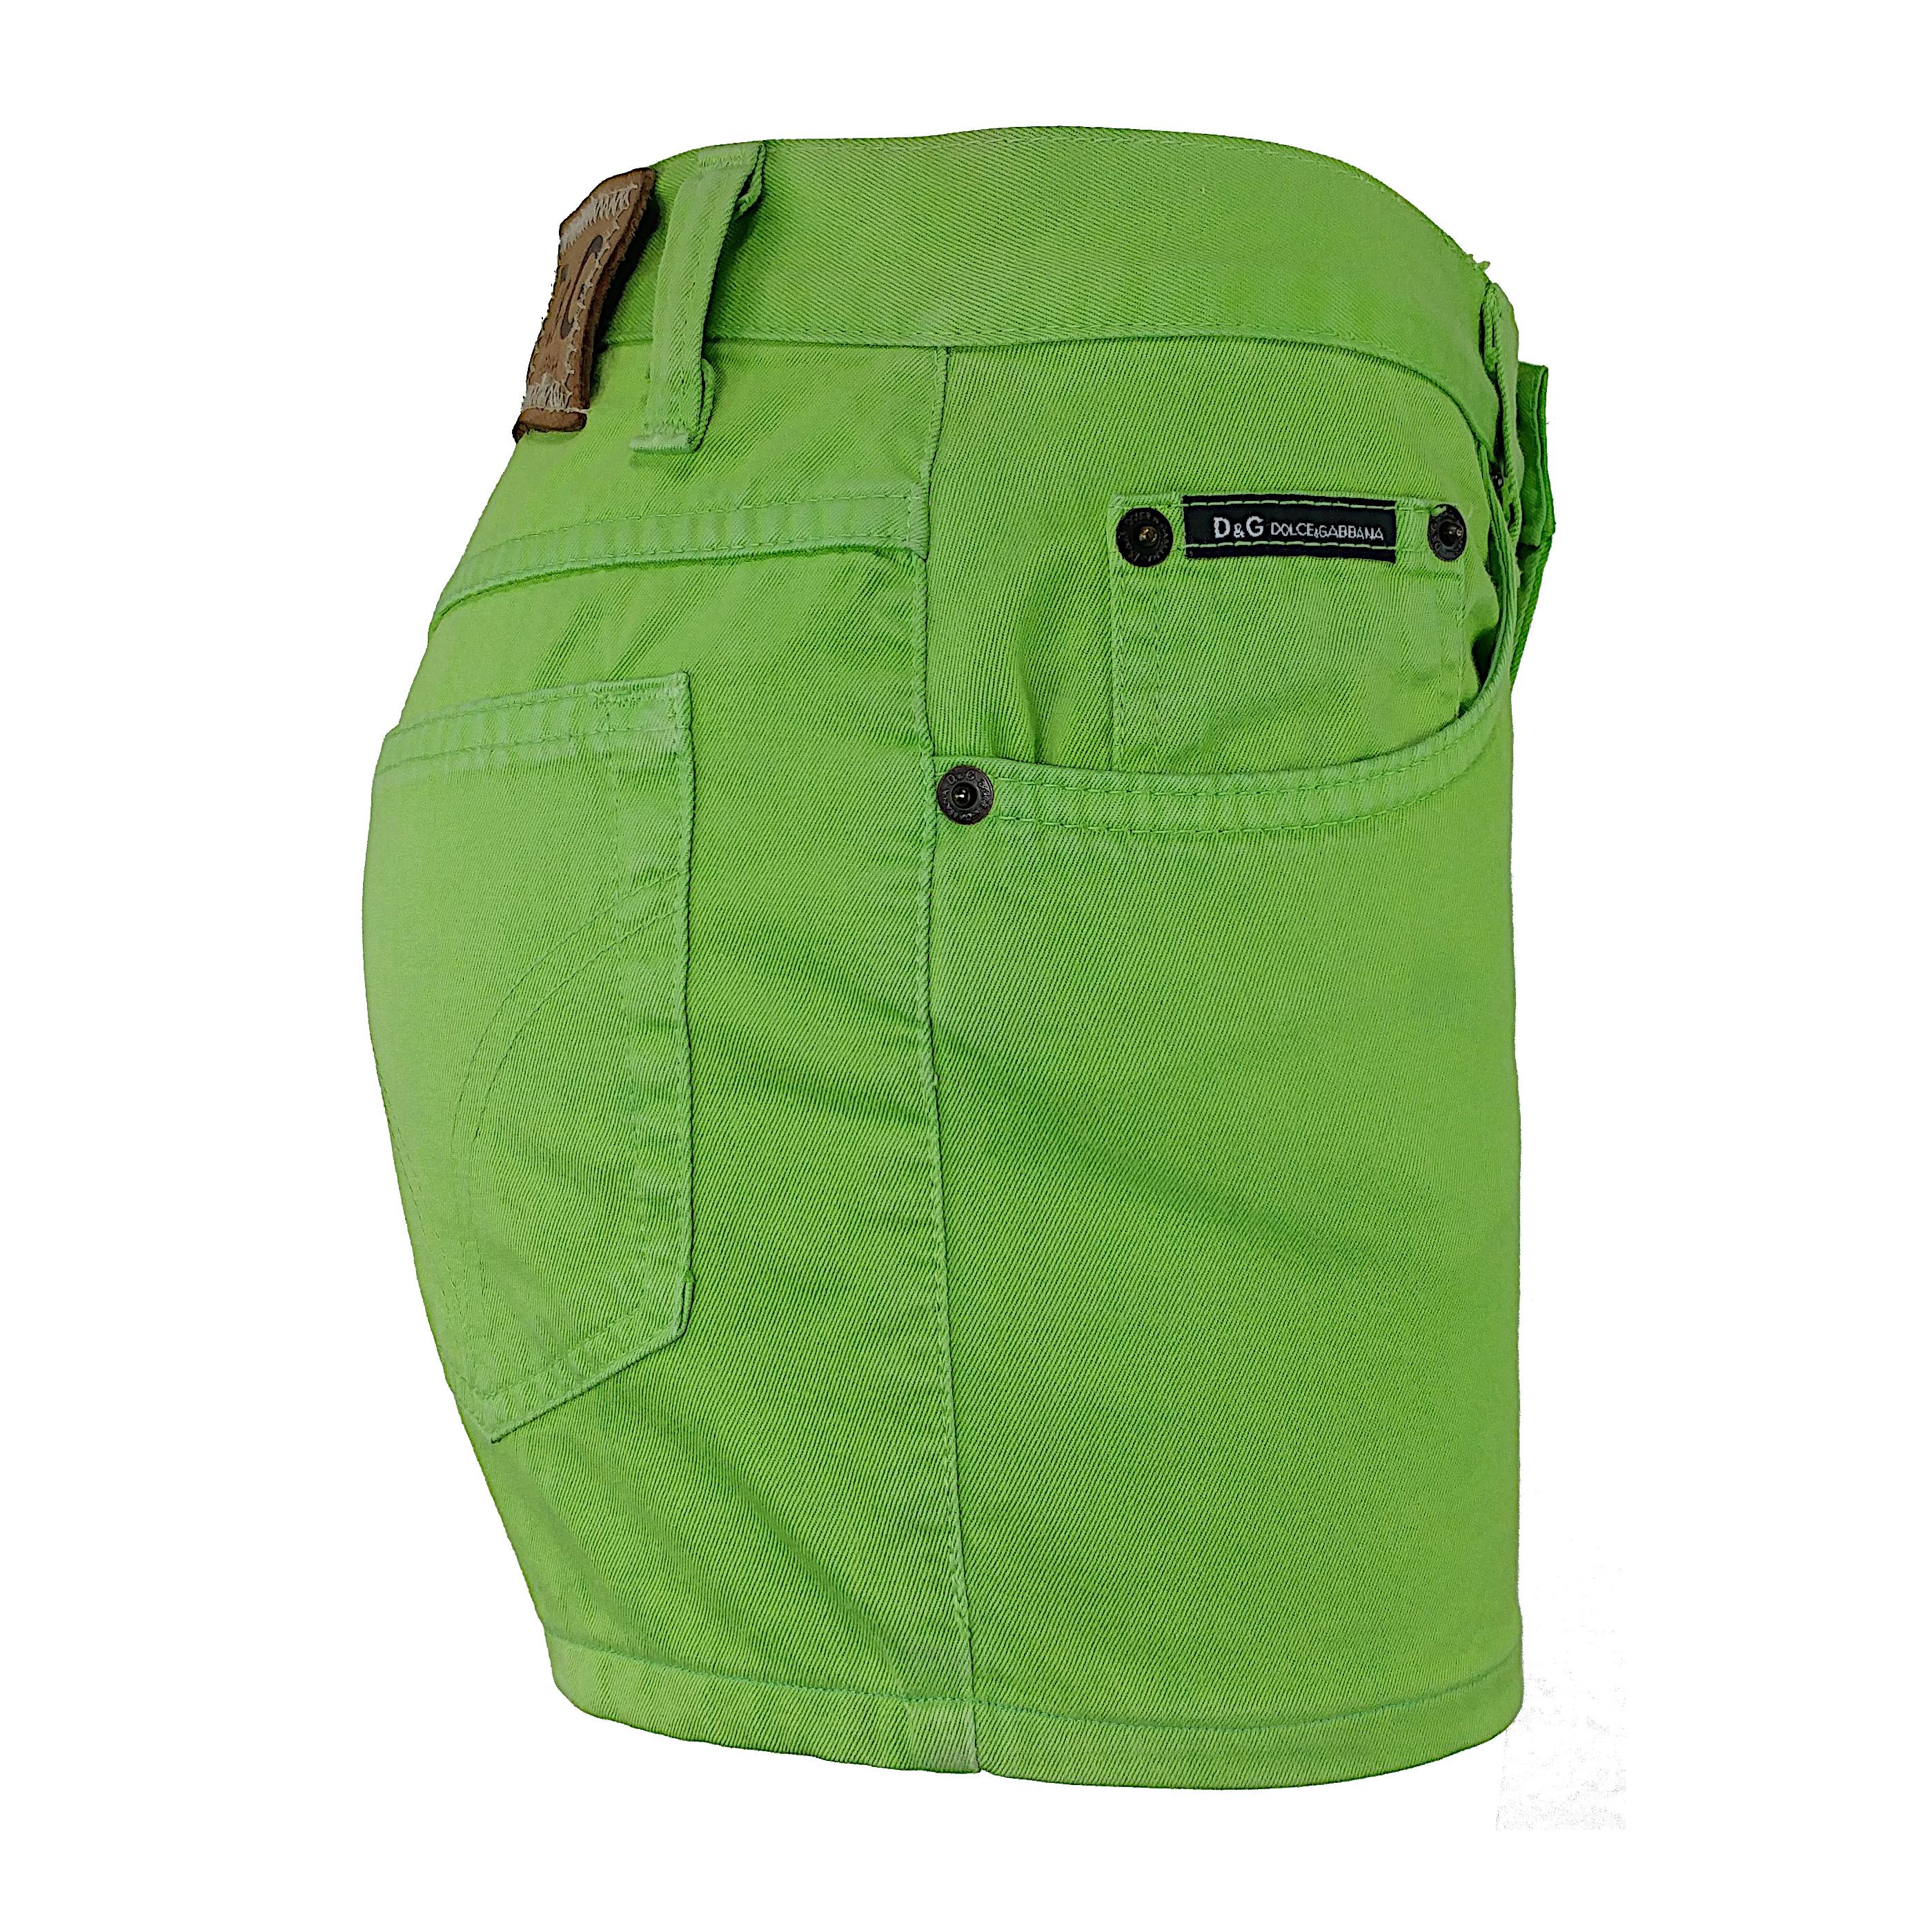 Le vert sera très tendance dans les prochaines saisons ! Voici une paire de pantalons chauds de Dolce&Gabbana, avec un design classique à 5 poches et une taille moyenne, très confortable. Le pantalon a été lavé plusieurs fois, mais il conserve une